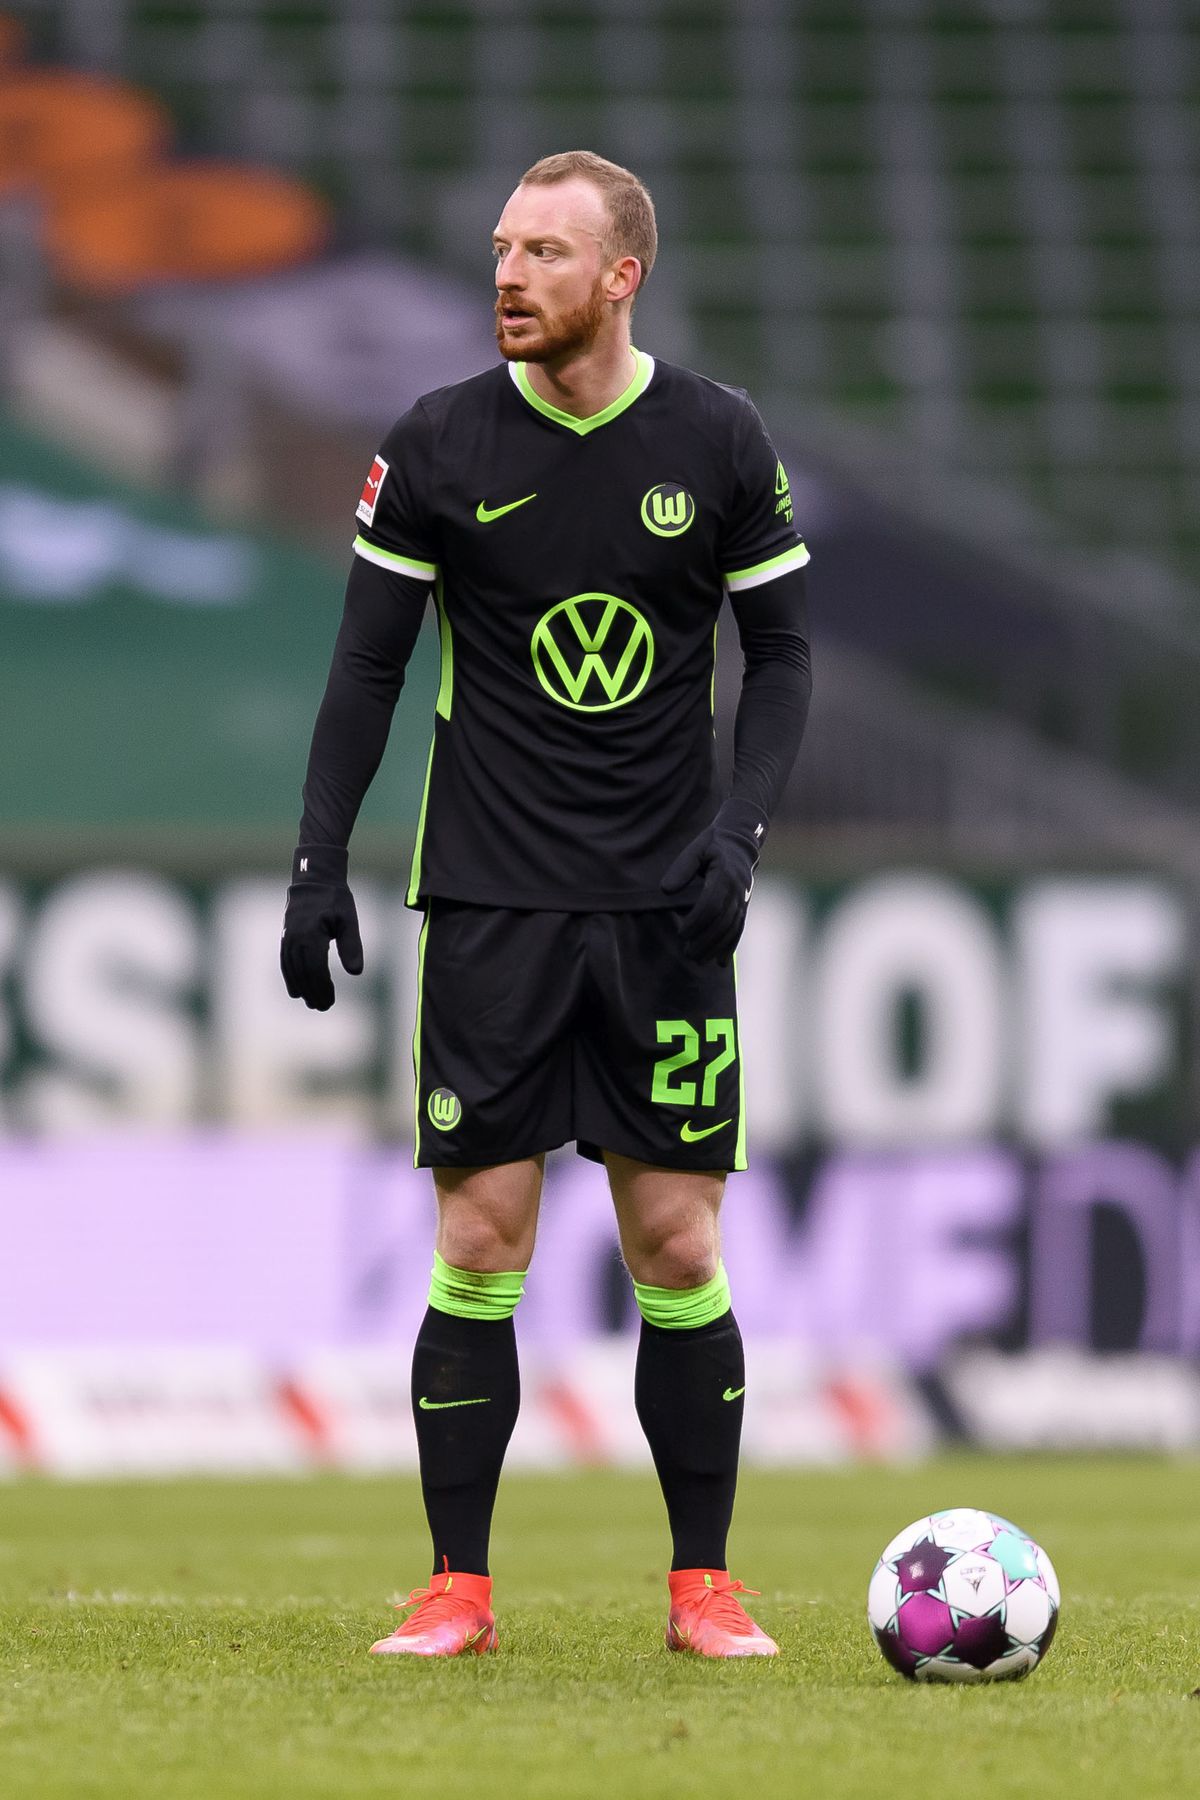 SV Werder Bremen v VfL Wolfsburg - Bundesliga